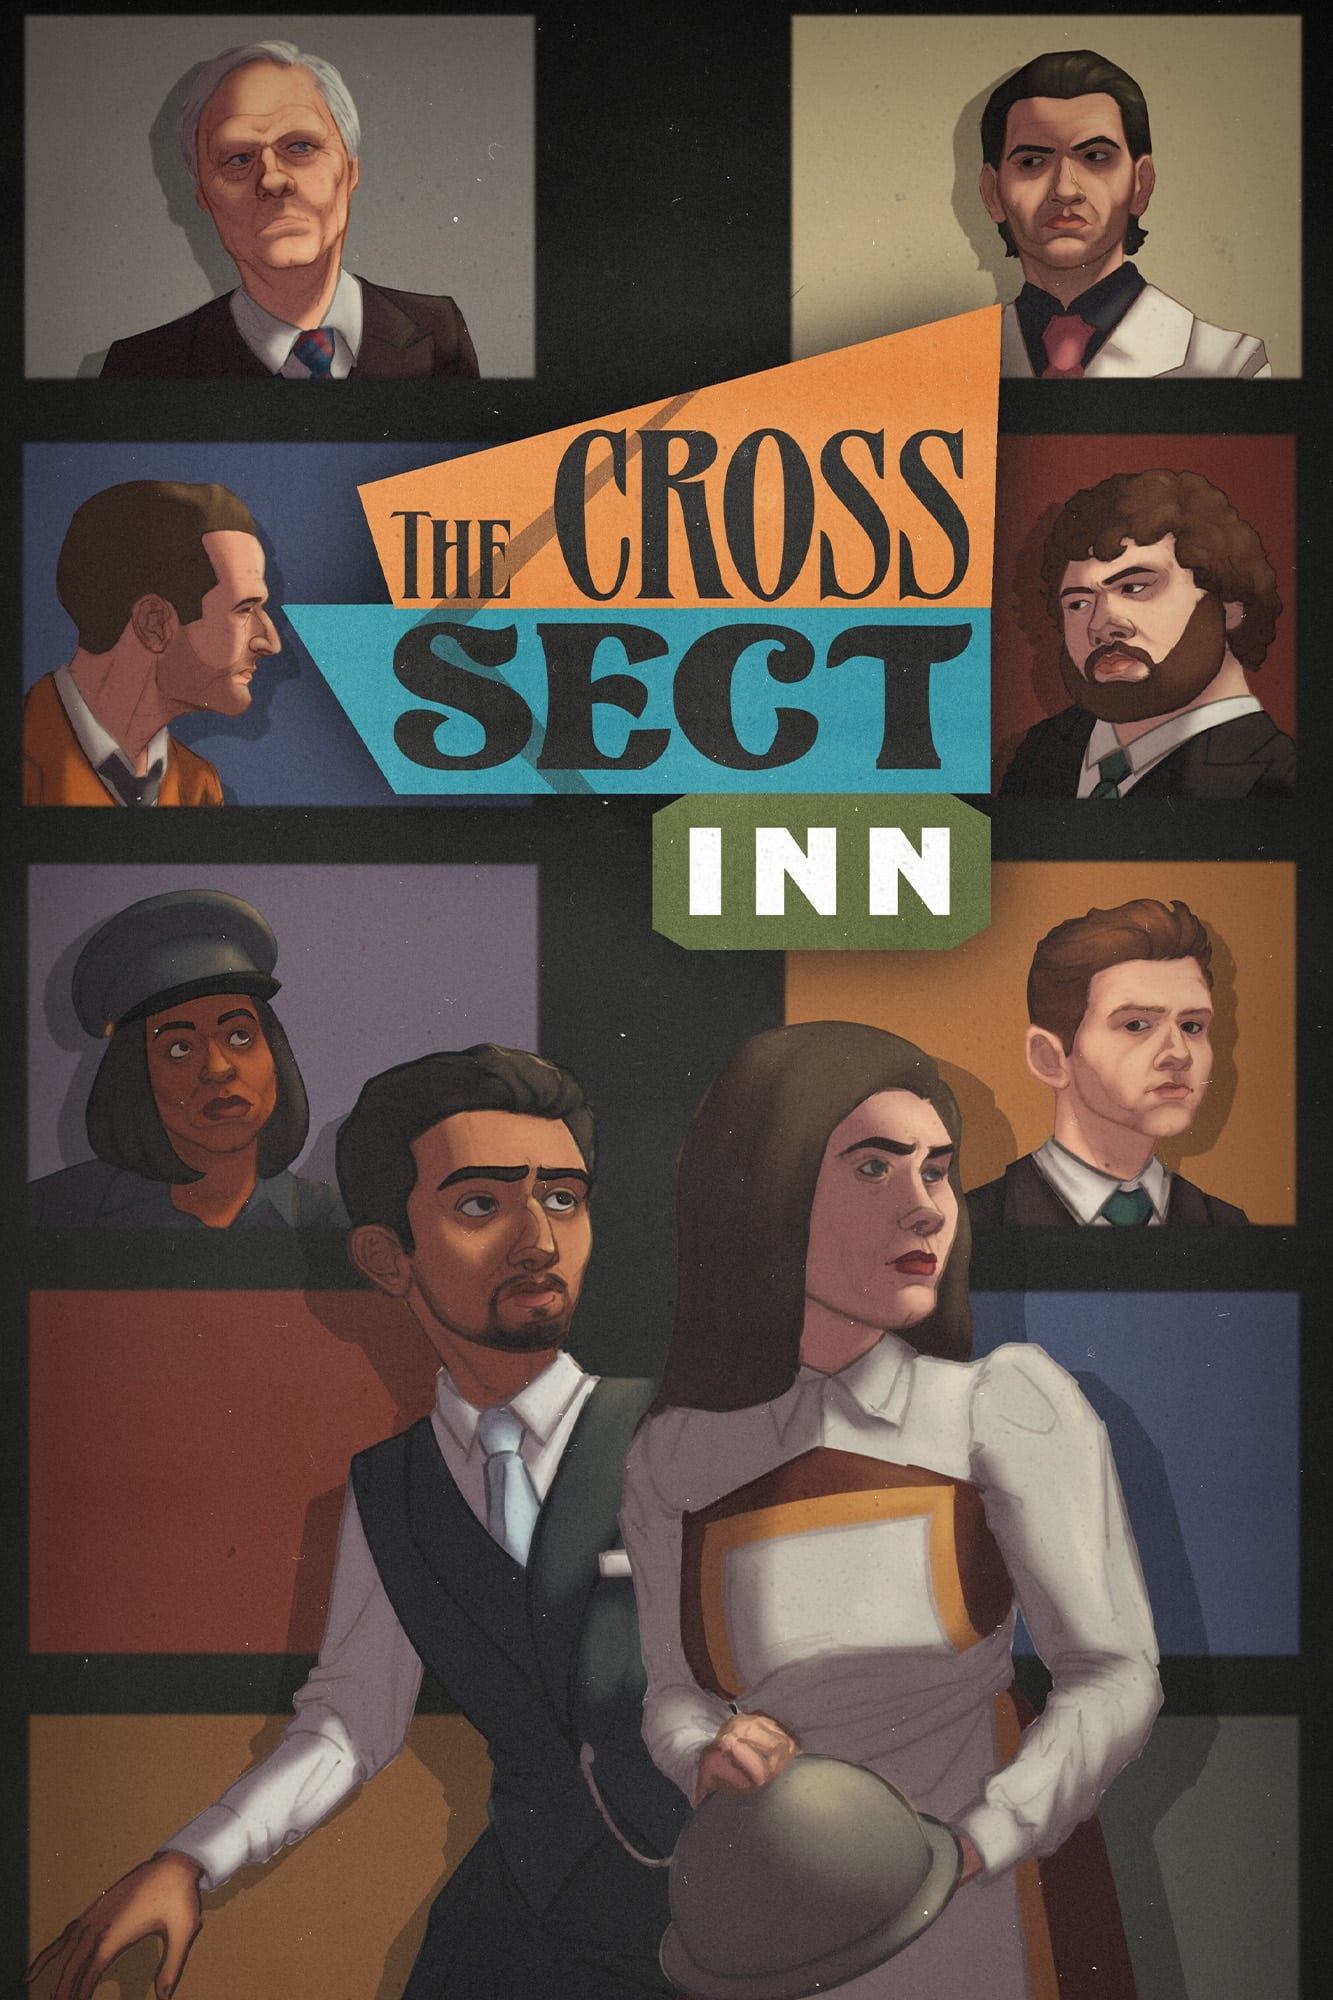 The Cross Sect Inn